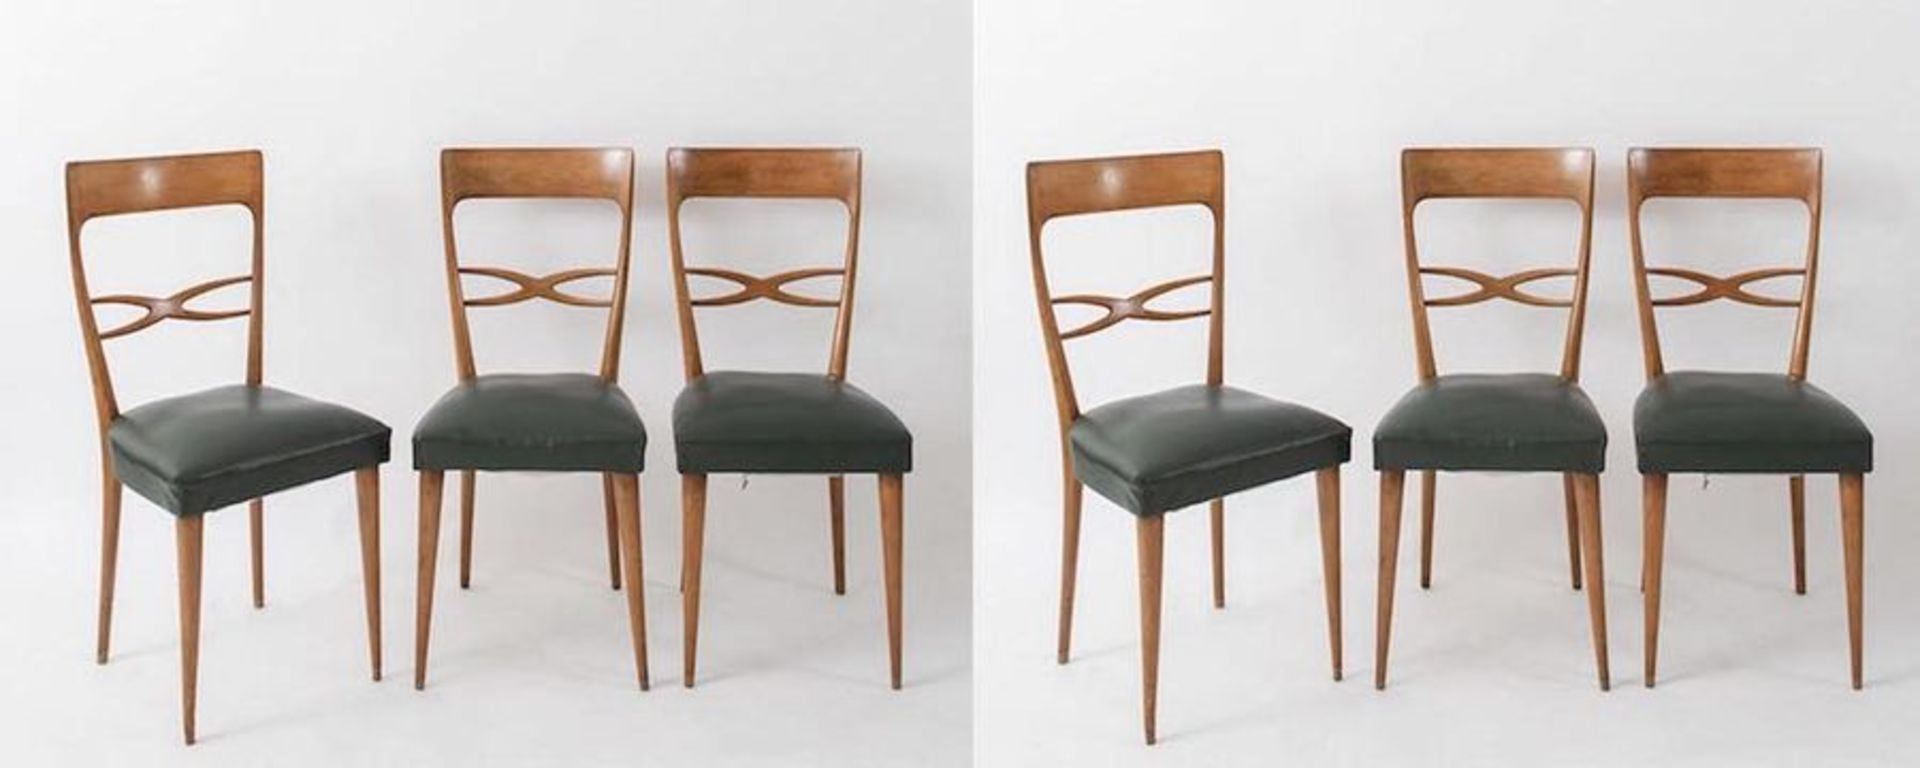 MELCHIORRE BEGA, attr. Sei sedie in legno con rivestimento in pelle. Prod. Italia, 1960 ca. Cm 95x42